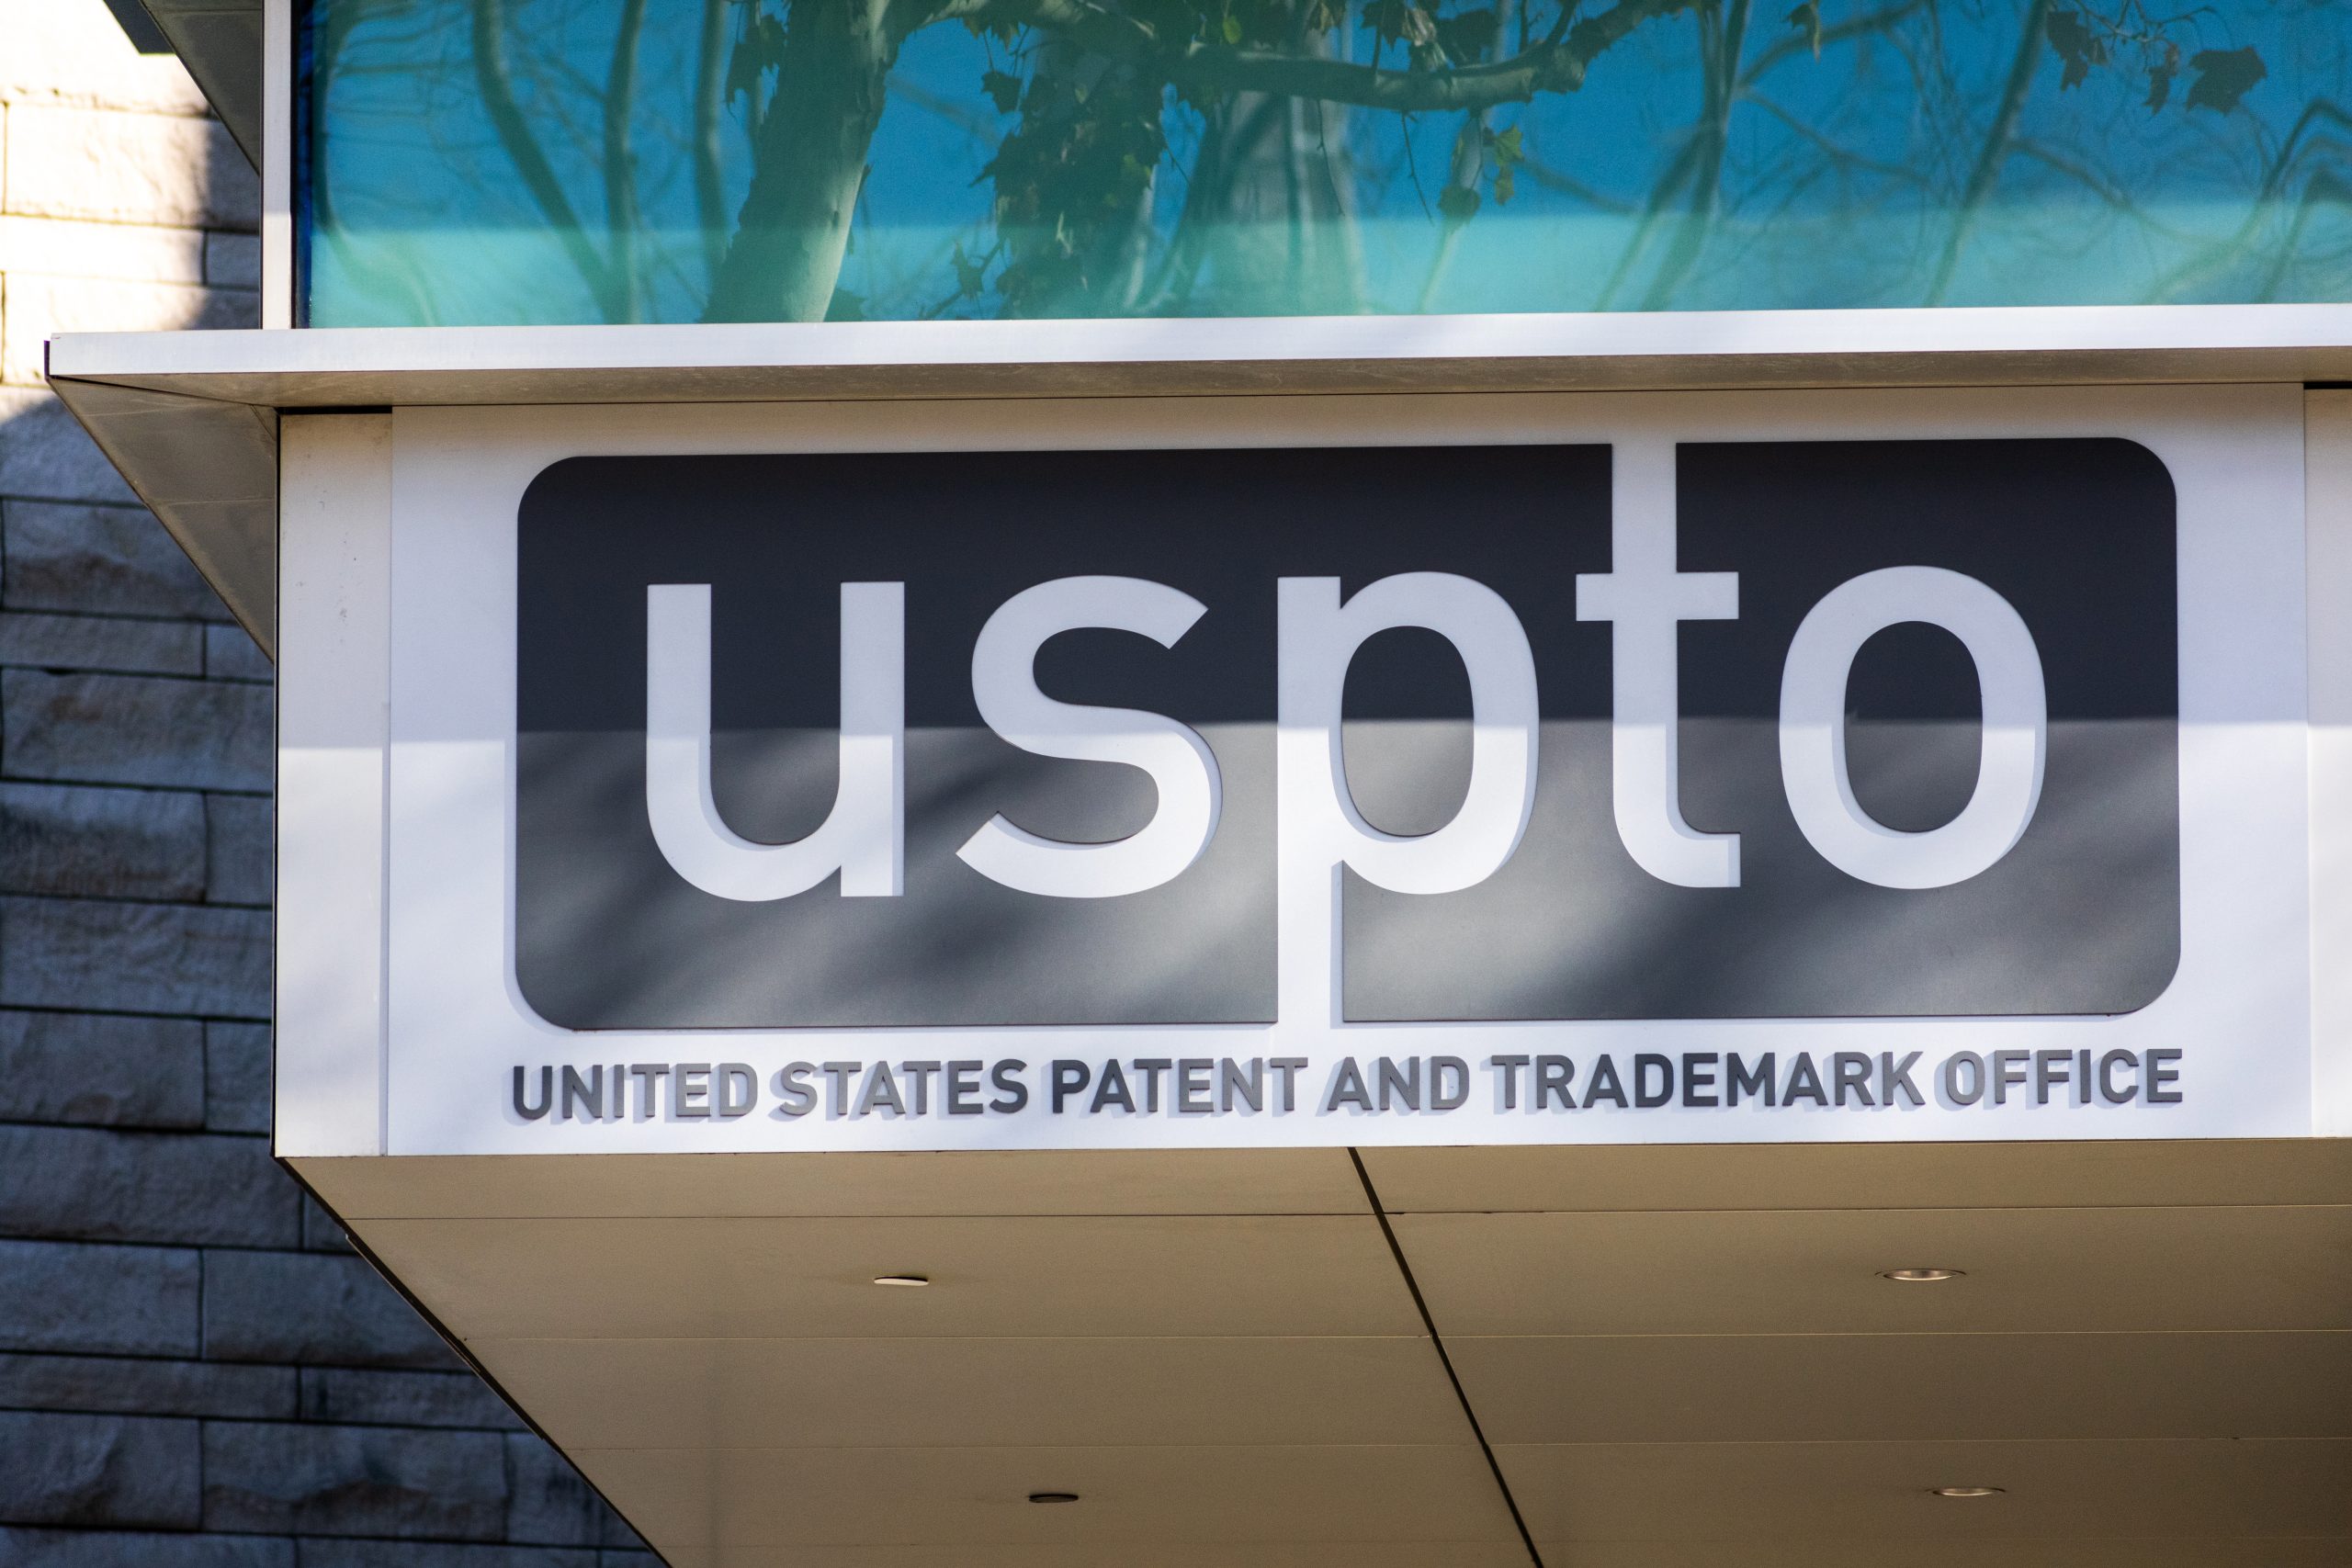 USPTO, o escritório de registro de patentes e marca dos EUA